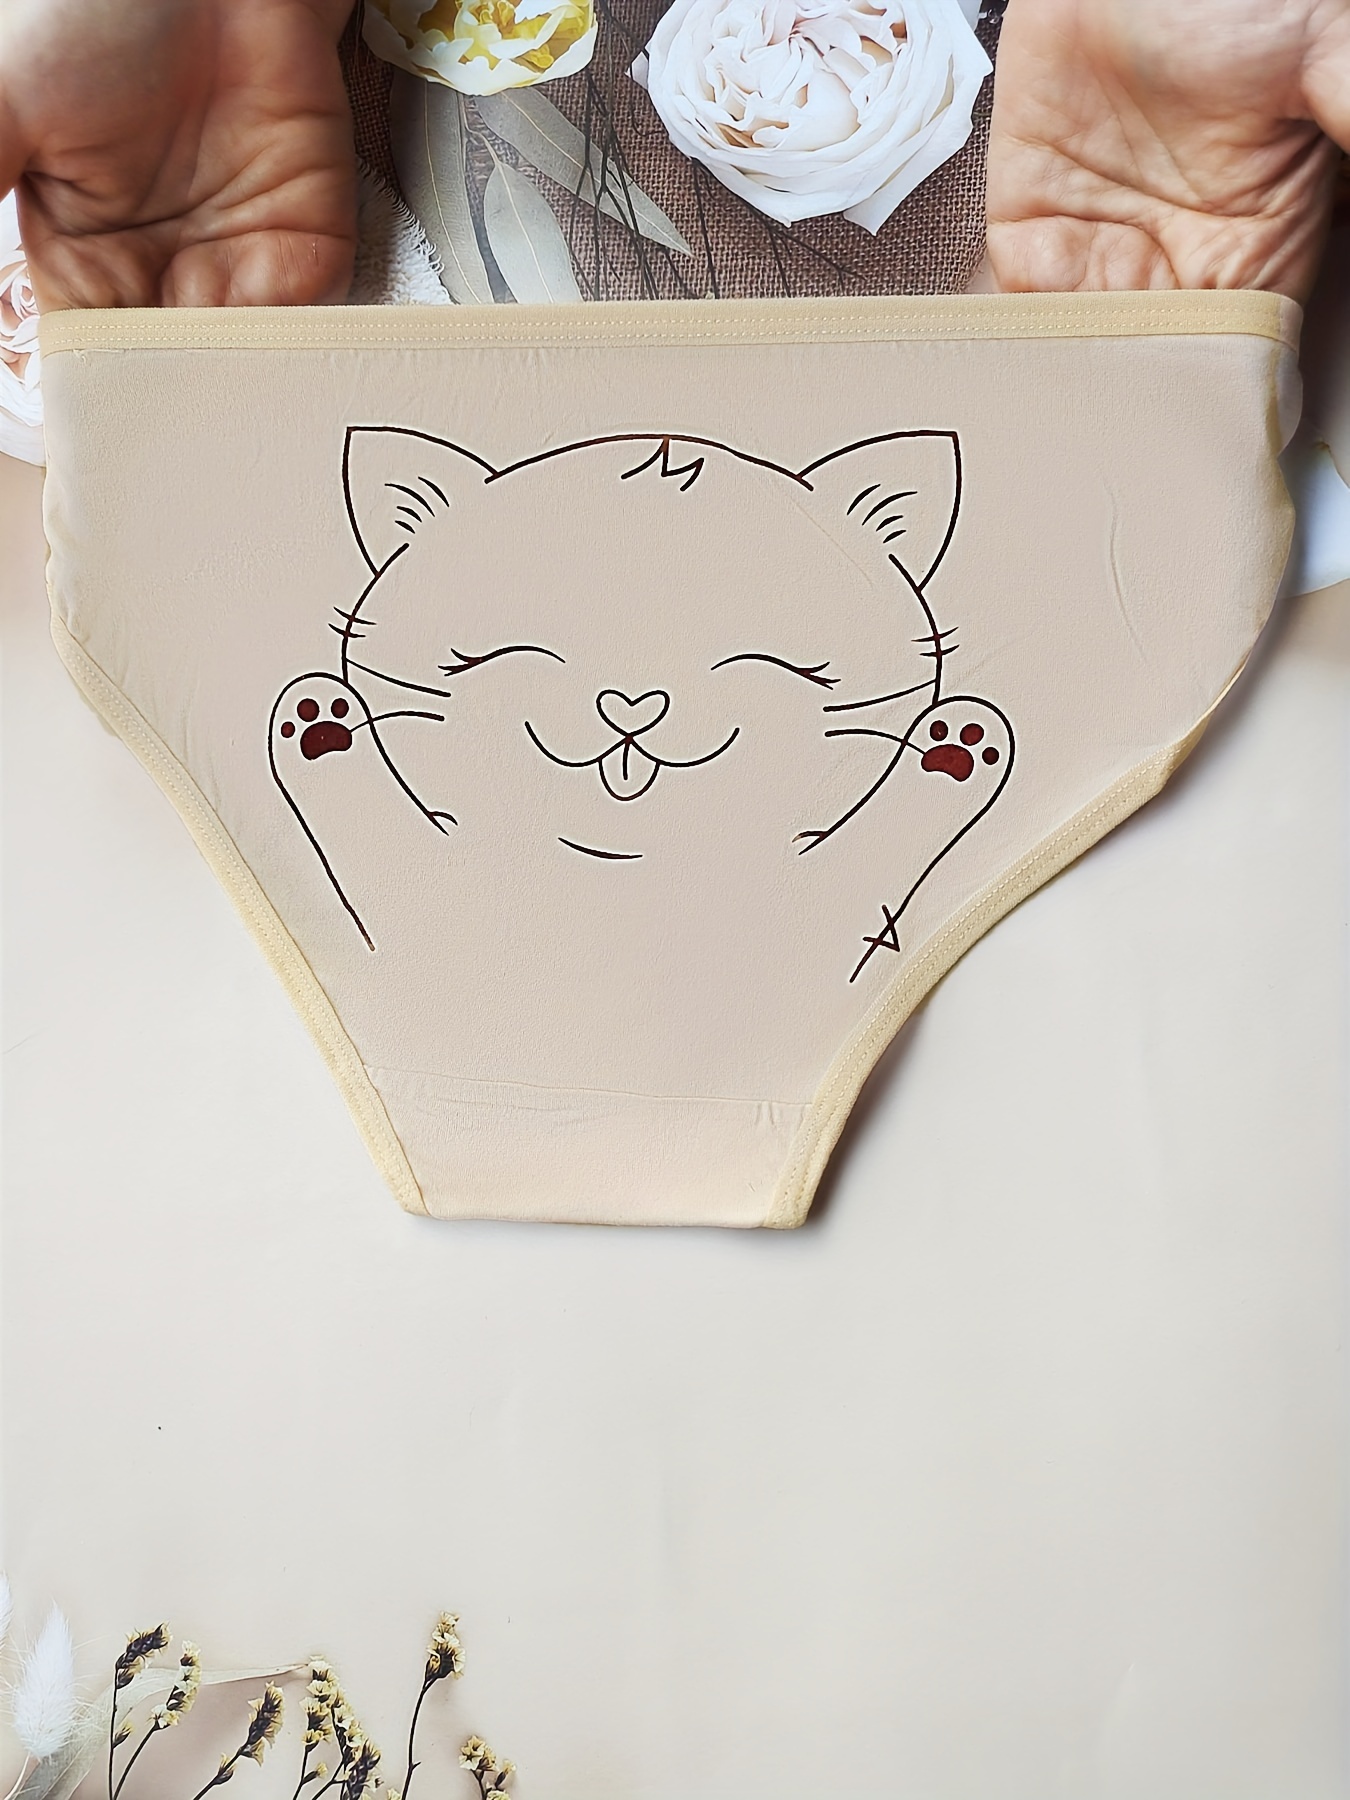 Cartoon Cat Print Bikini Panties Comfy Cute Stretchy Skin - Temu Japan